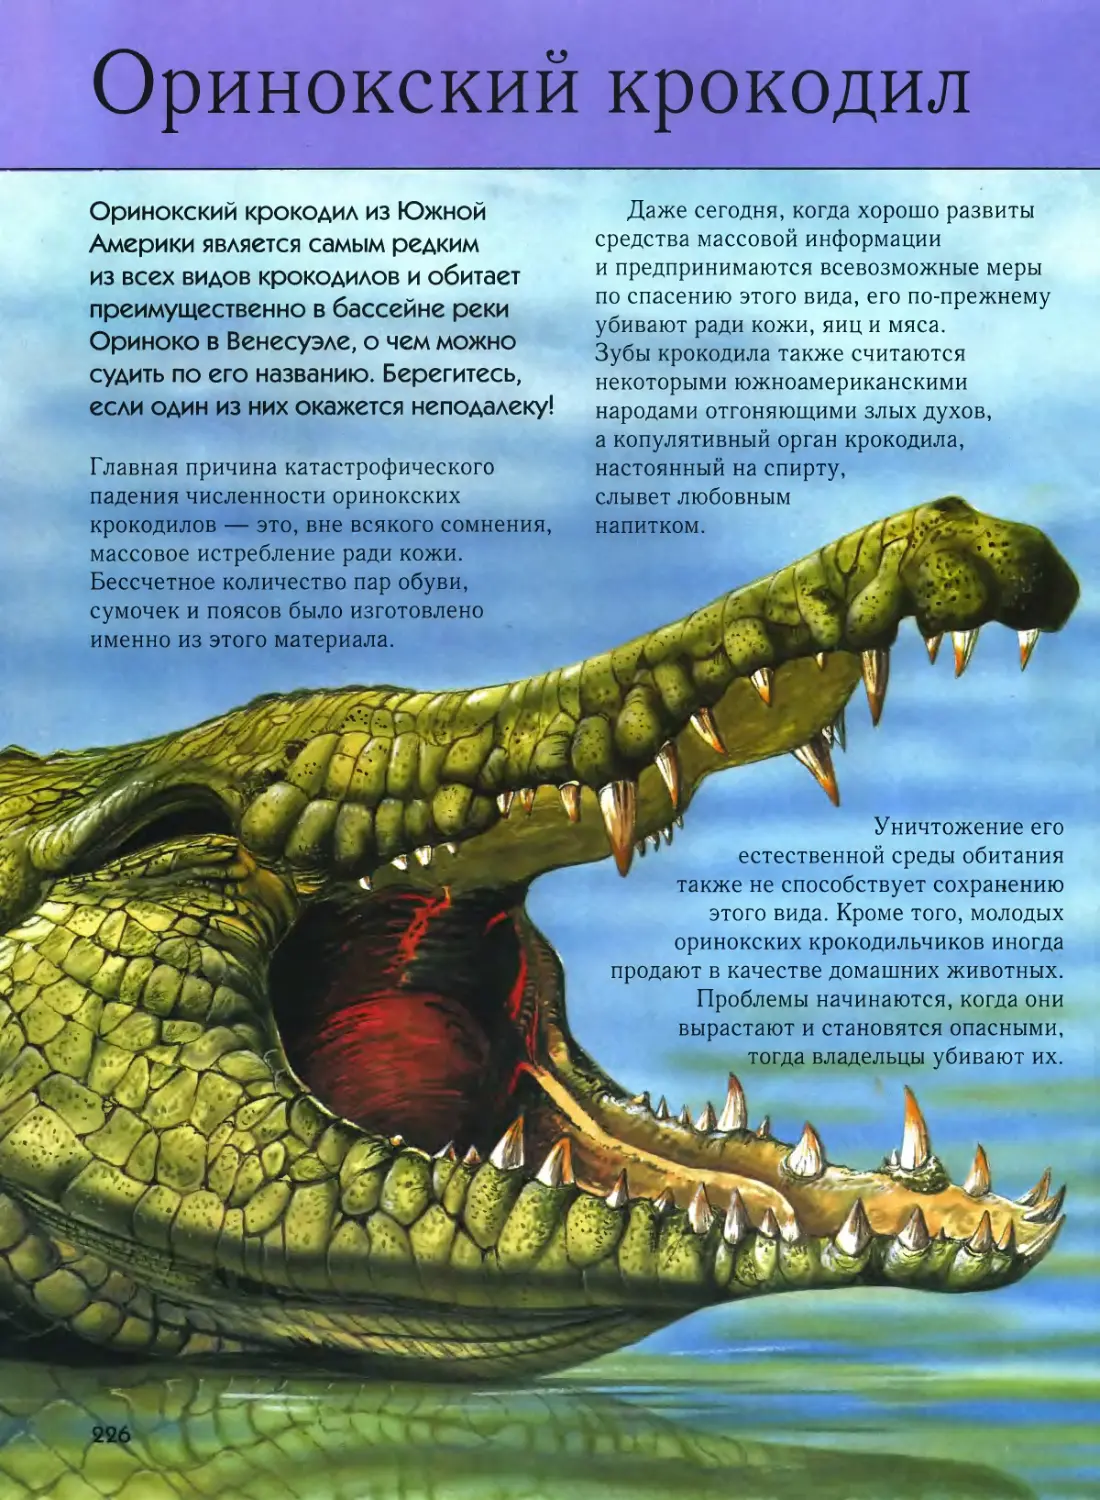 ¤ Оринокский крокодил